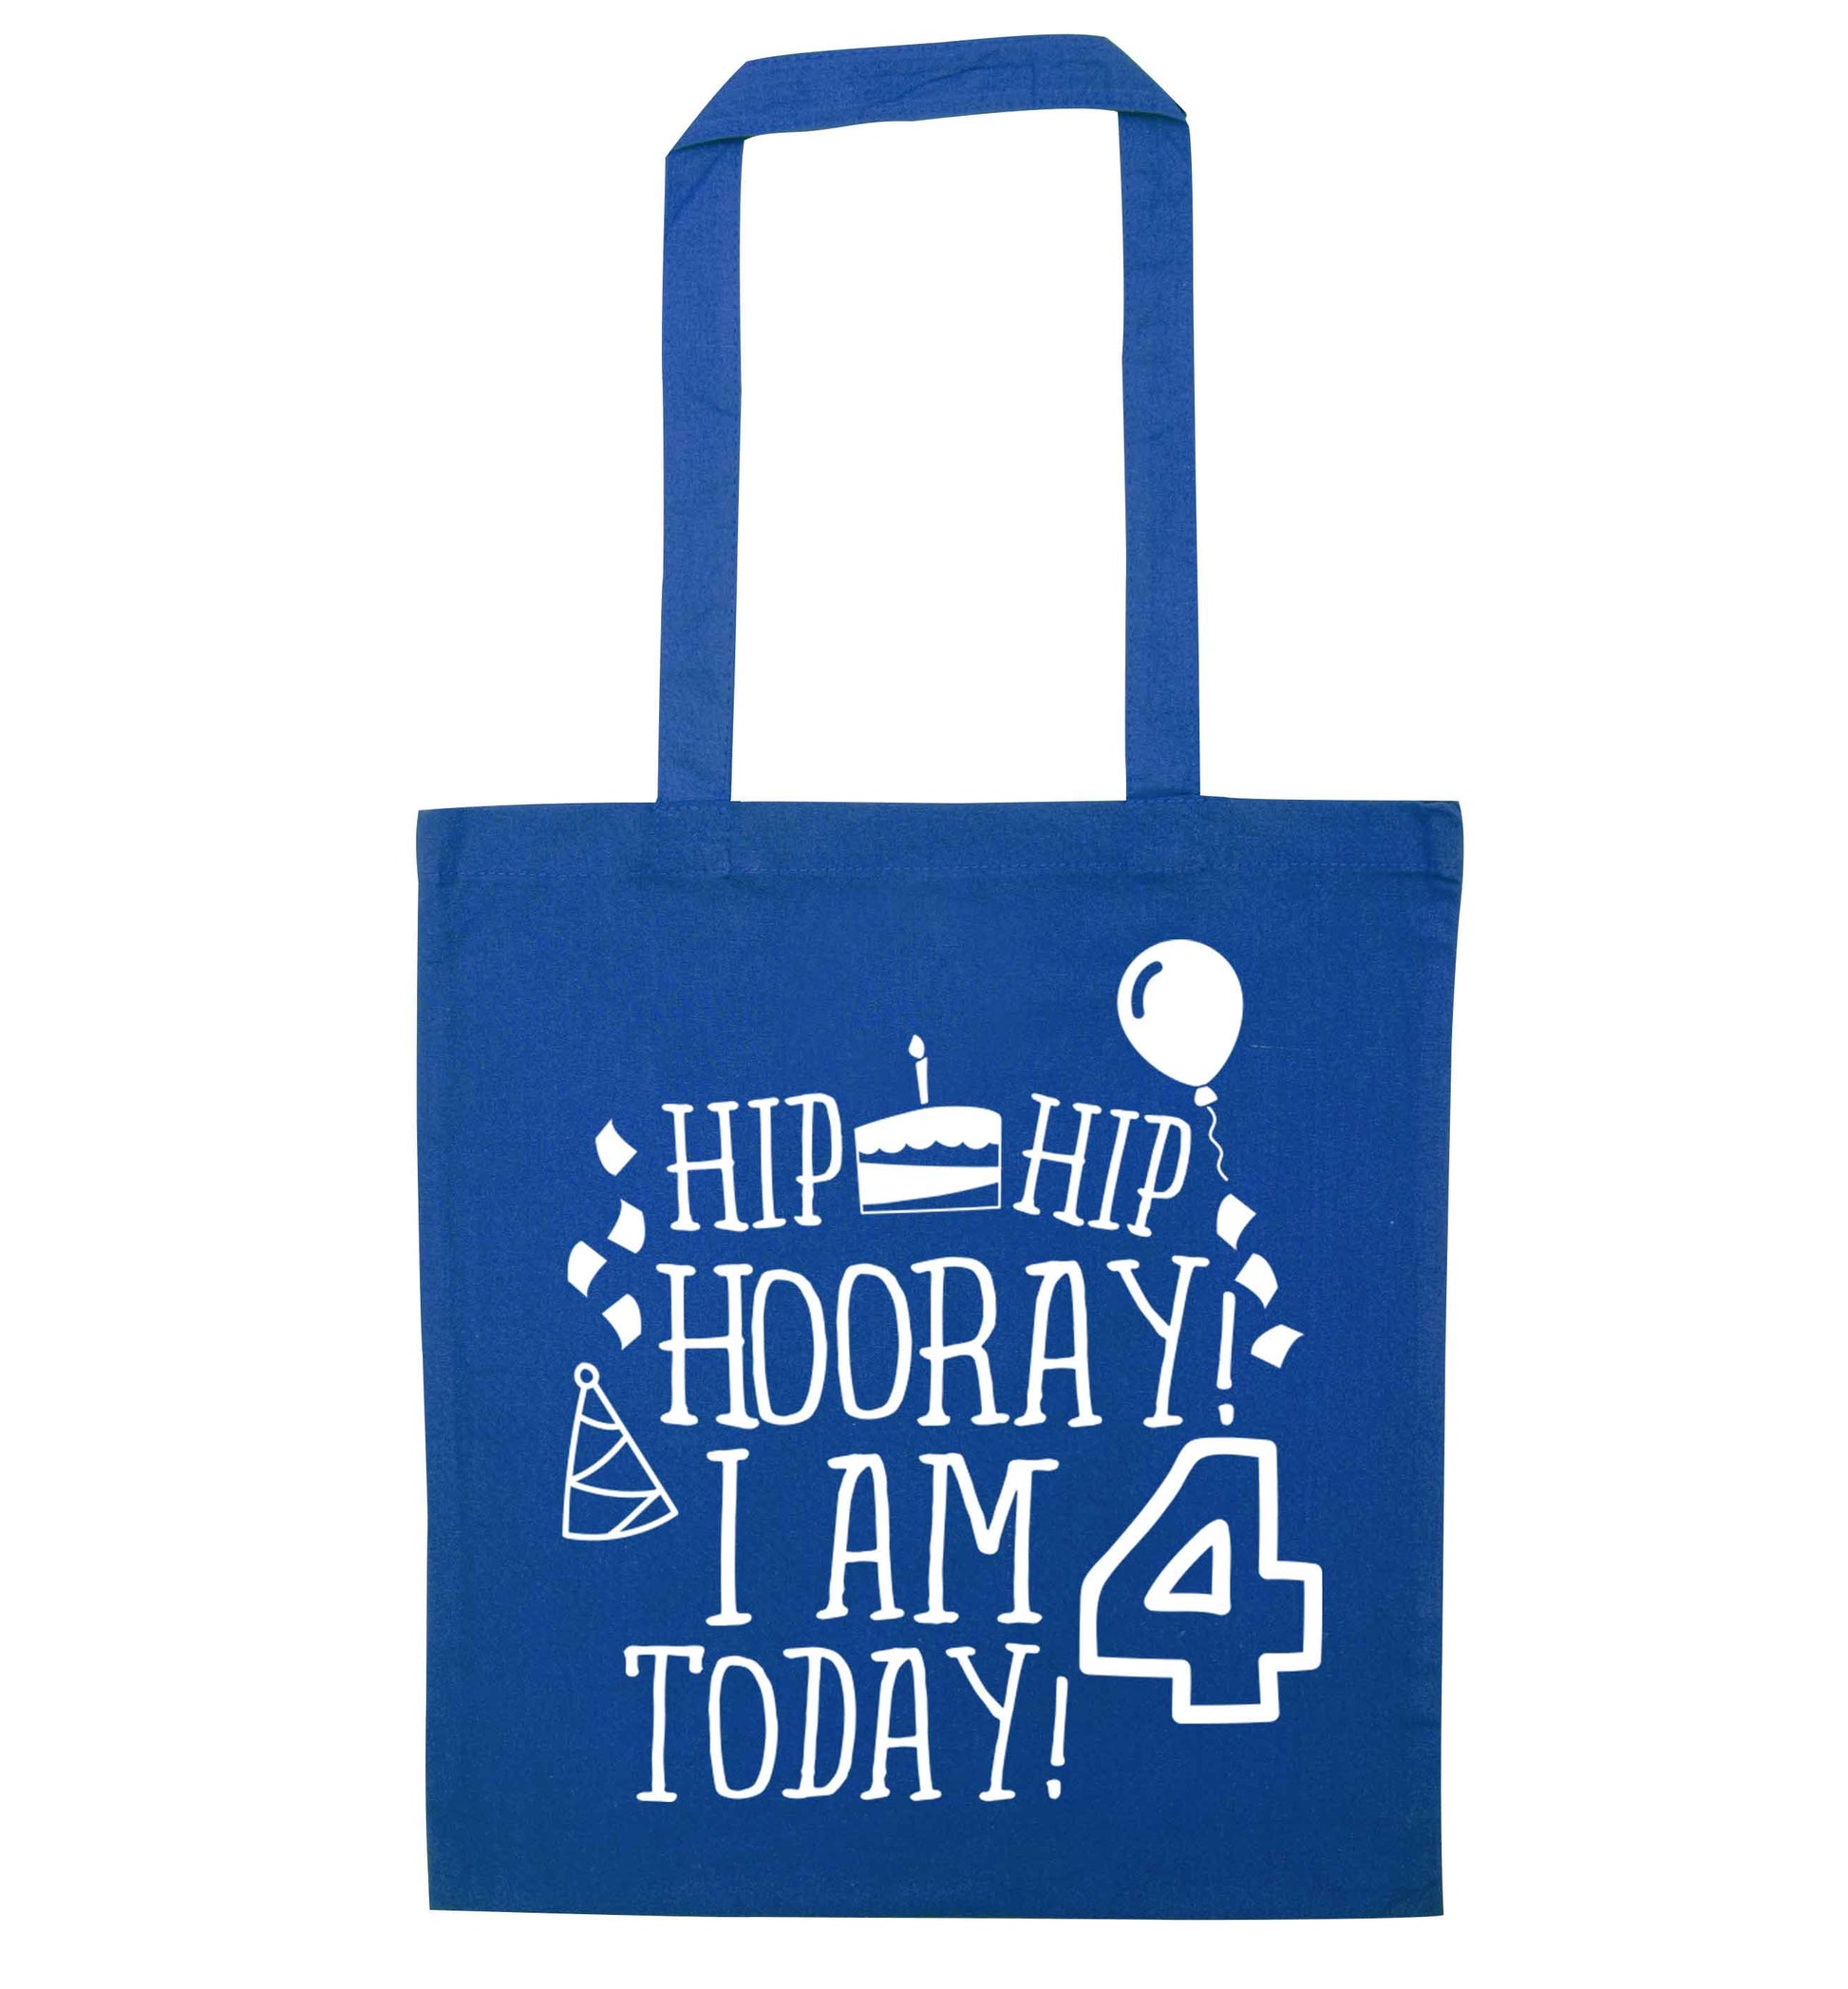 Hip hip hooray I am four today! blue tote bag